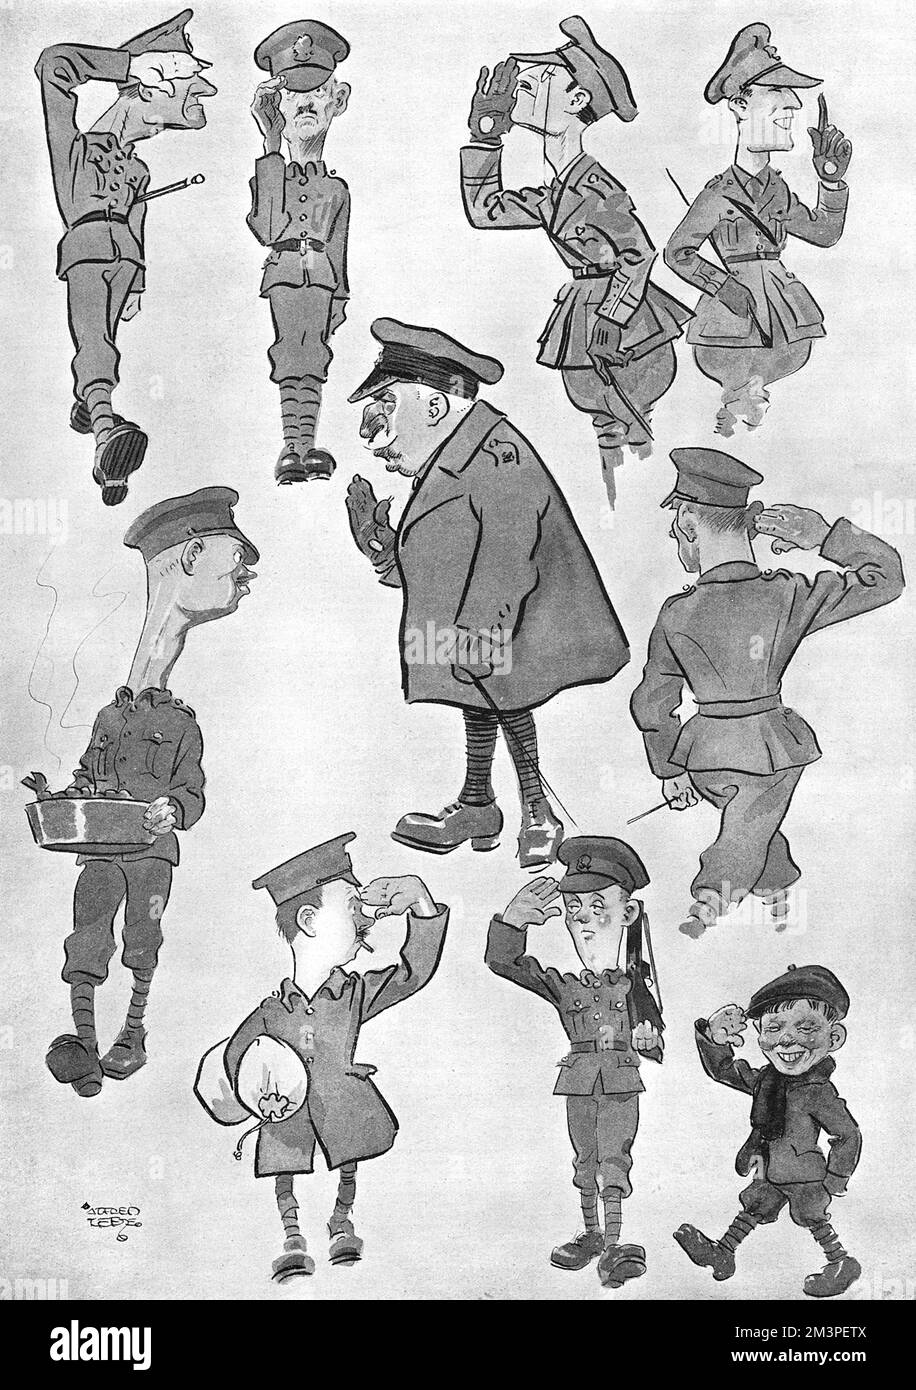 Caricatures humoristiques de divers types d'Armée montrant les styles variés de salutes utilisés. Date: 1918 Banque D'Images